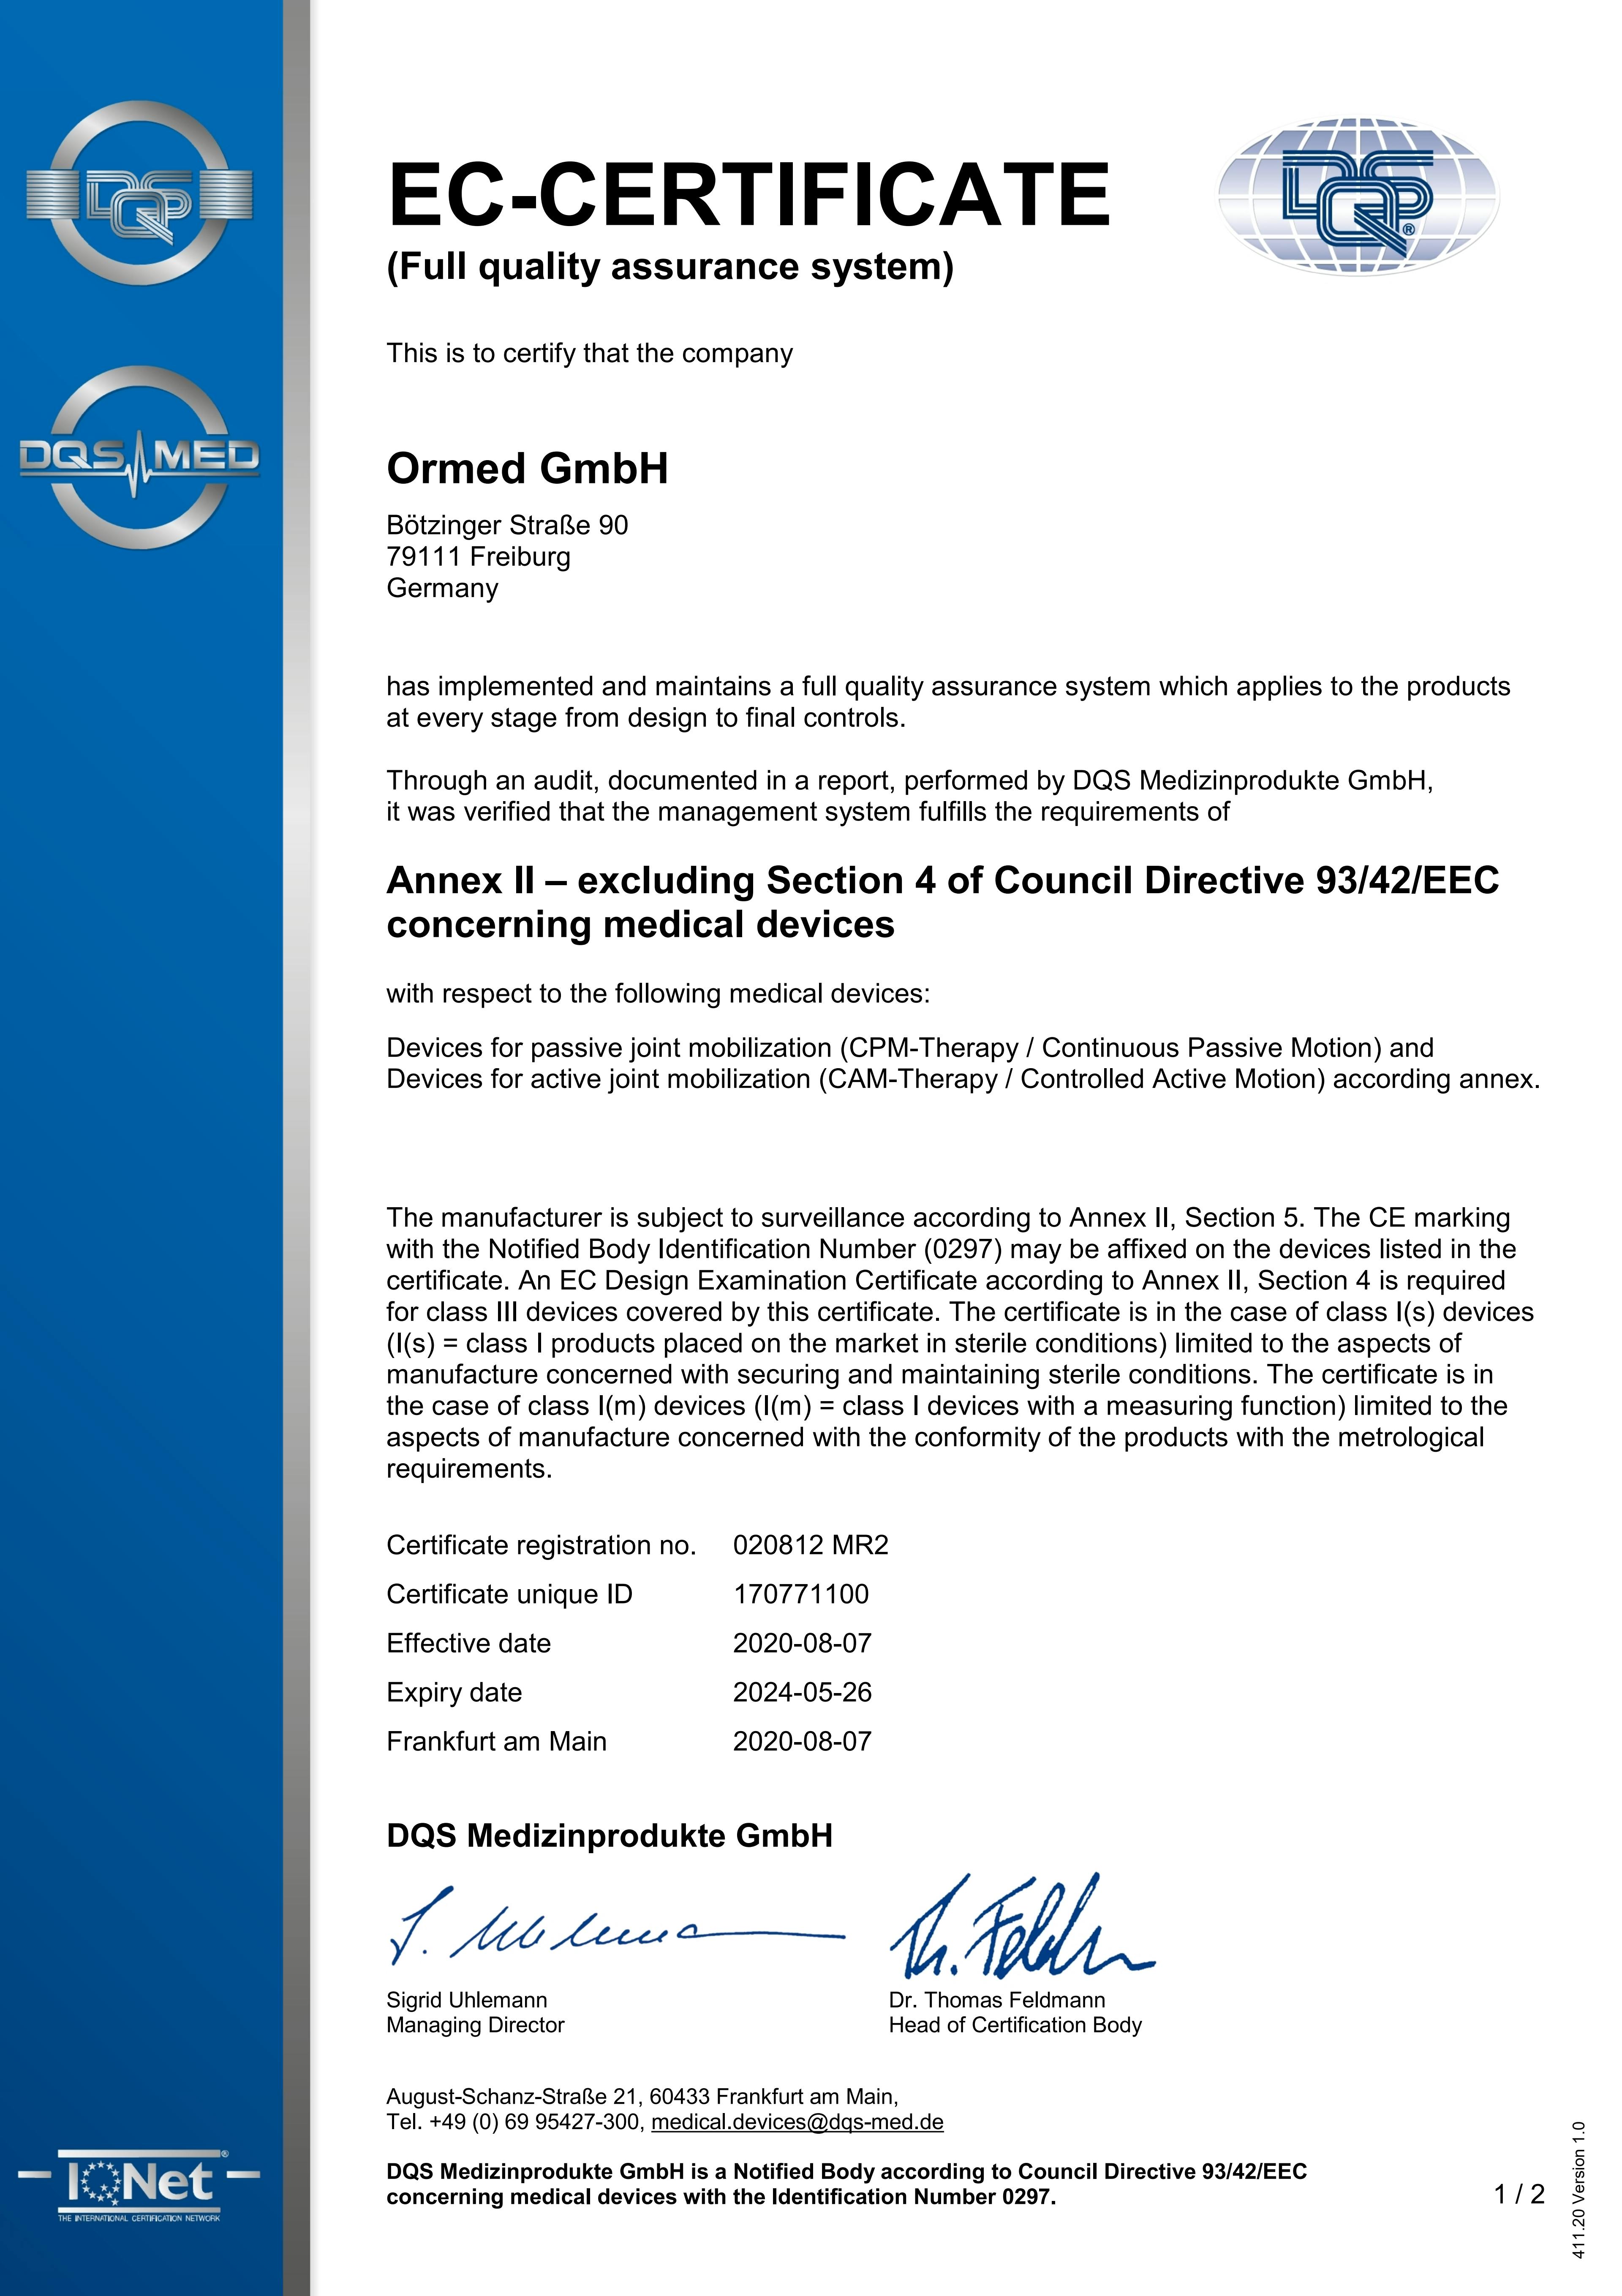 020812 EG-Certificate - Annex II - MR2 2020-08-07 englisch.pdf